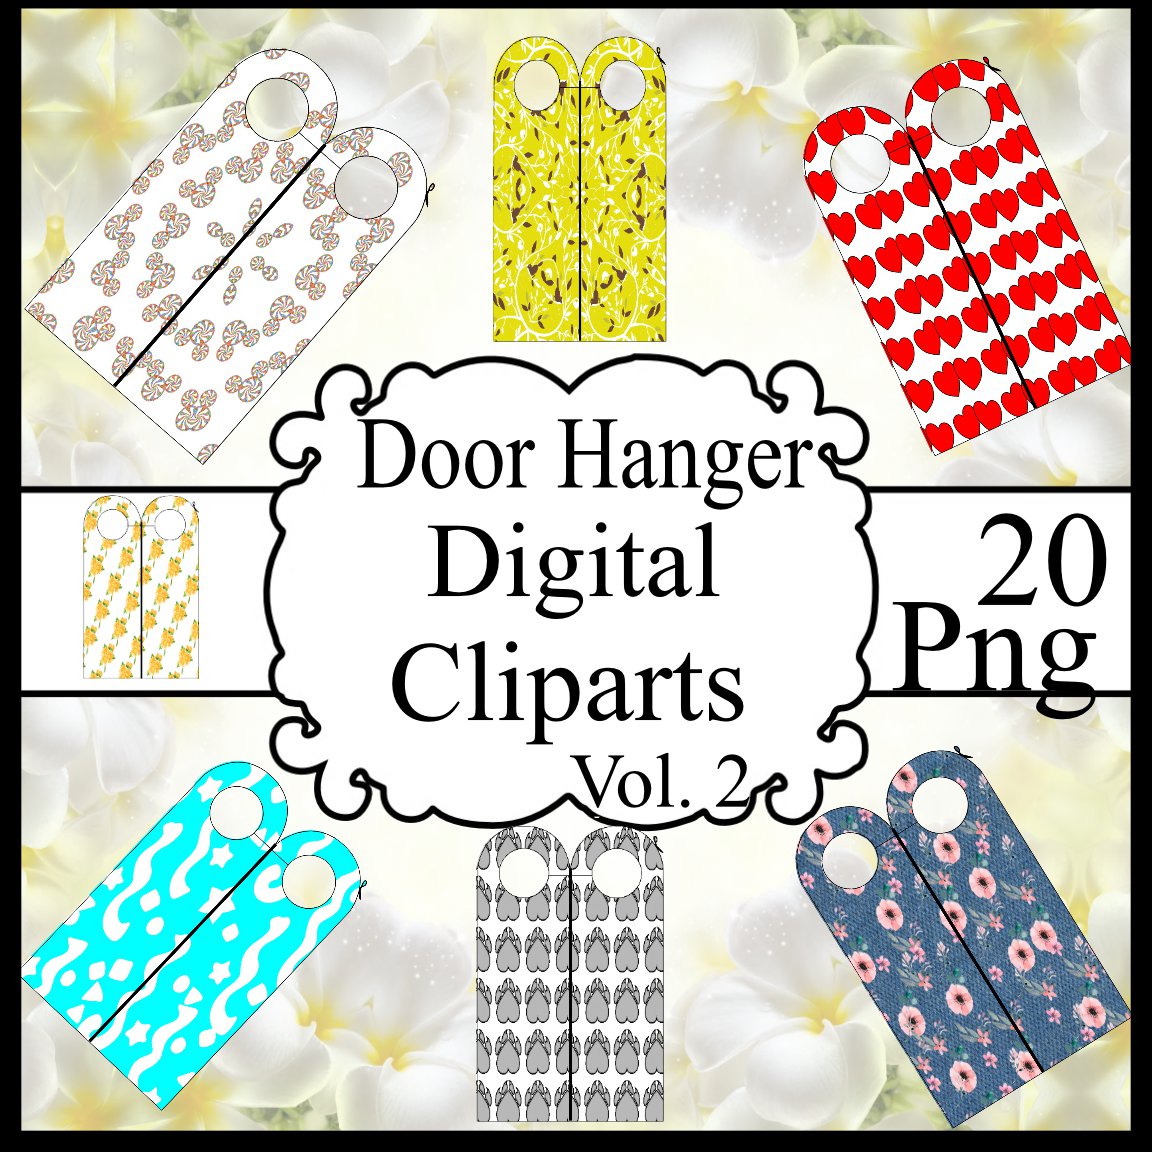 Door Hanger Digital Clipart Vol. 2